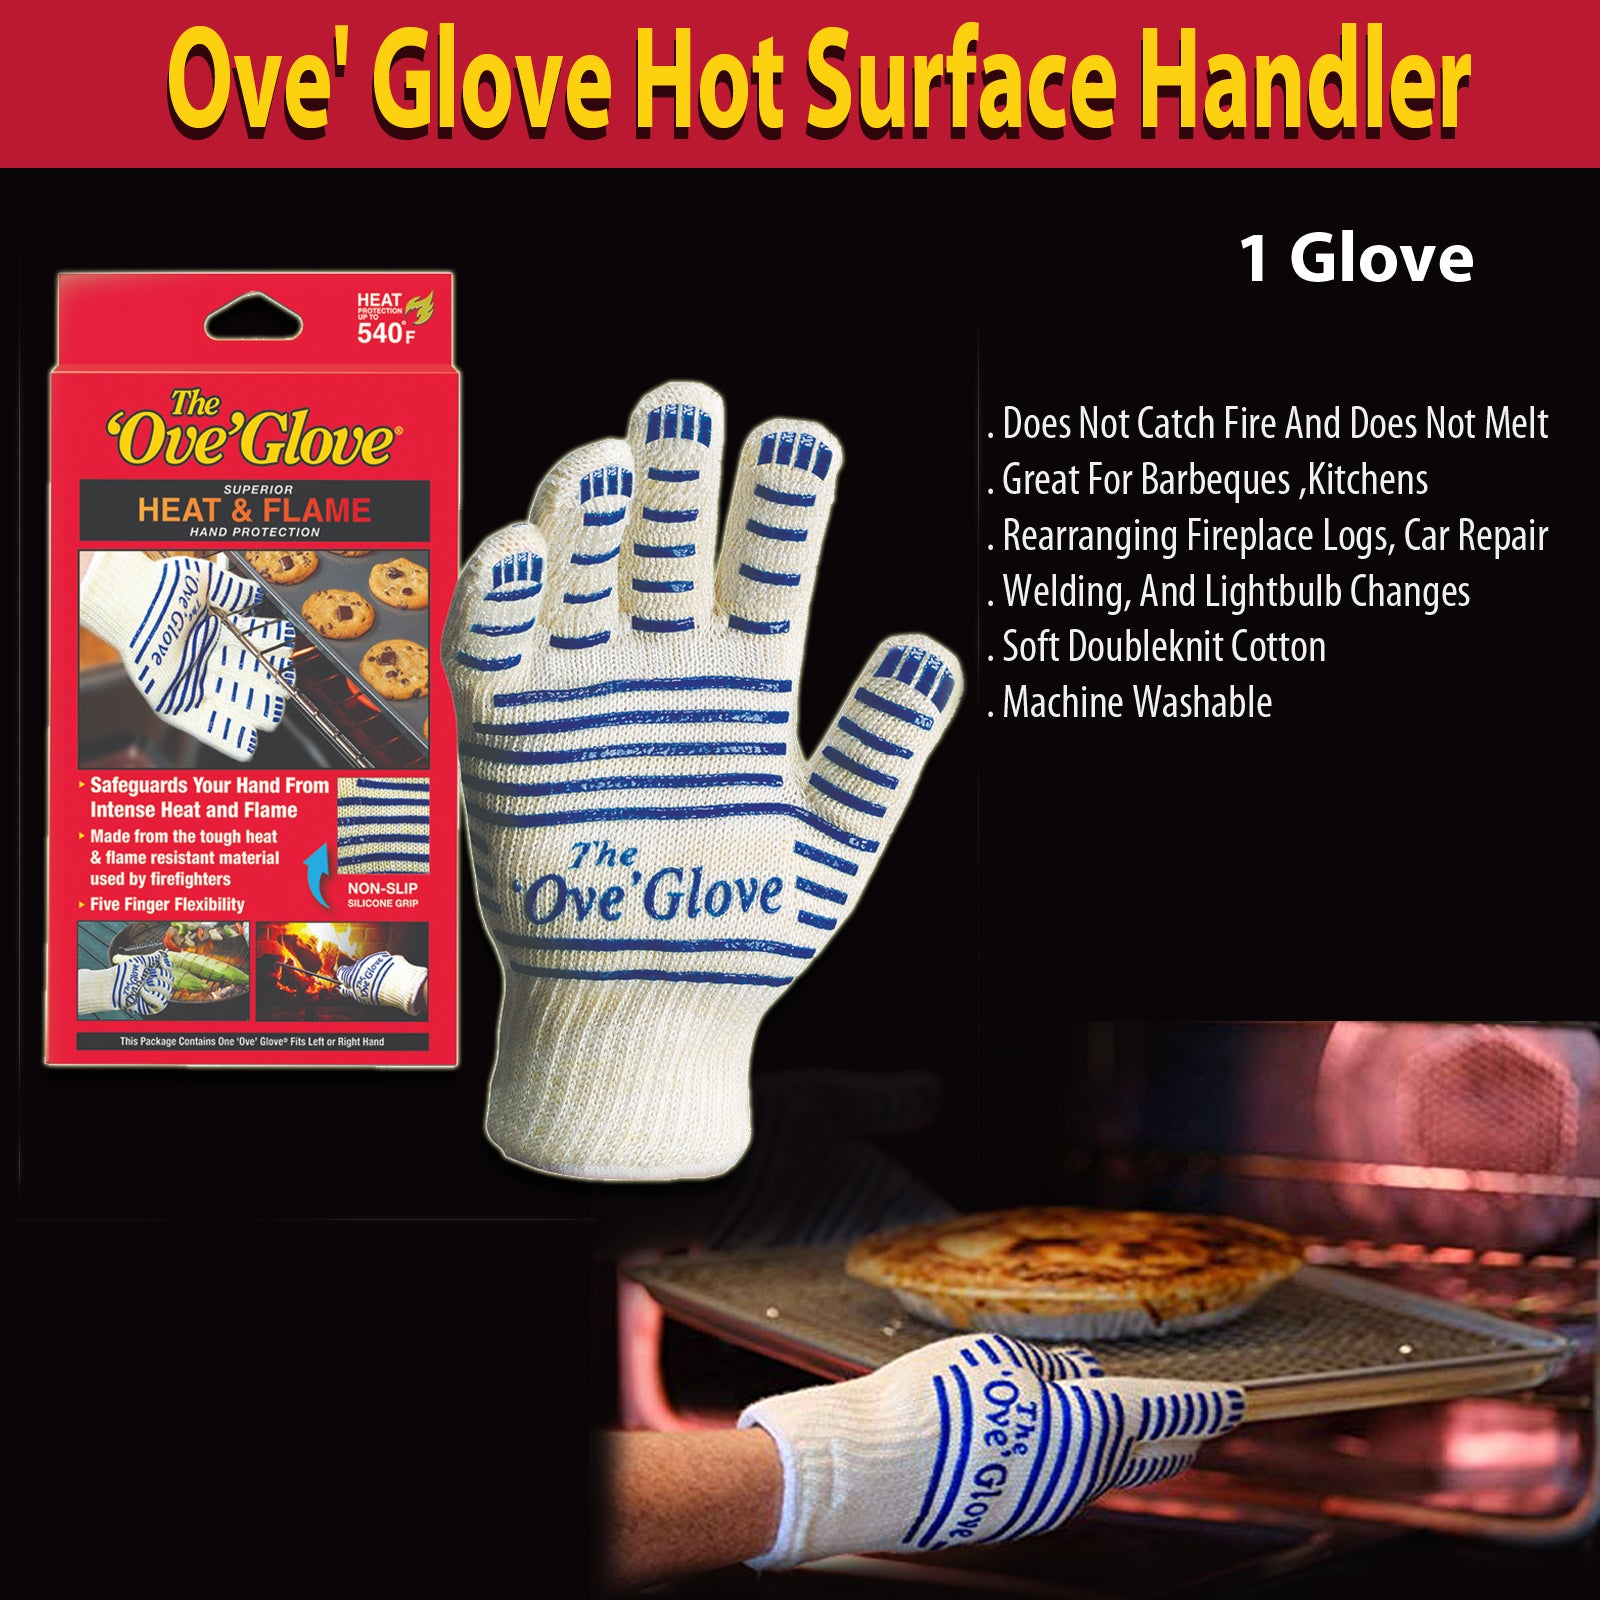 Ove' Glove Hot Surface Handler Kitchen Barbeque (1 Glove)